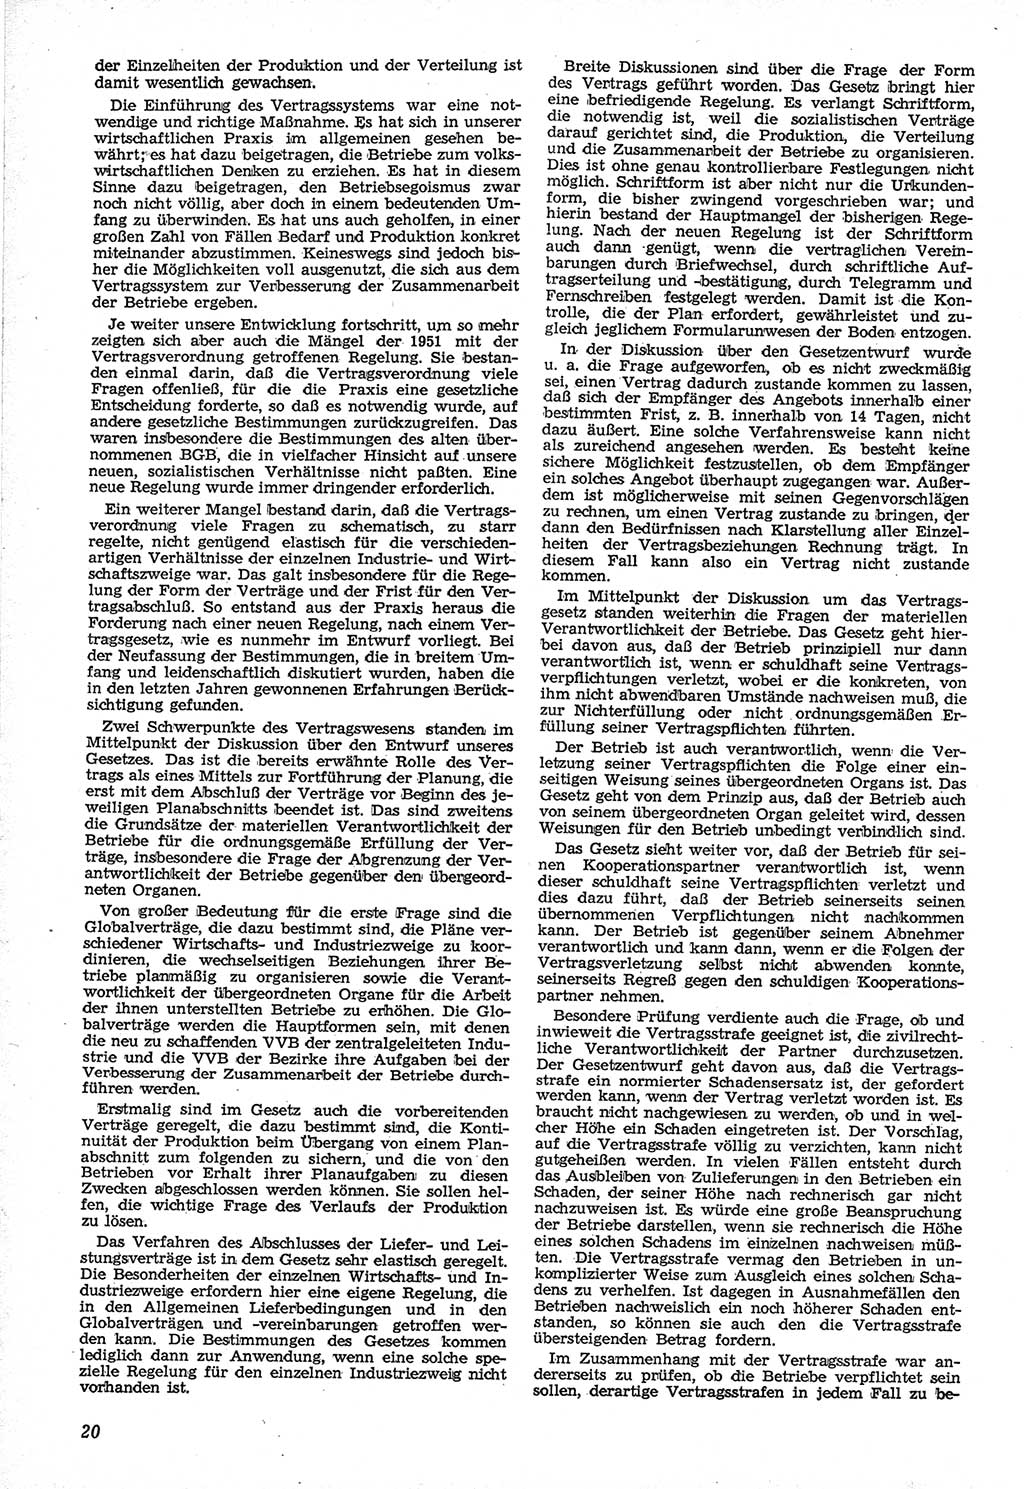 Neue Justiz (NJ), Zeitschrift für Recht und Rechtswissenschaft [Deutsche Demokratische Republik (DDR)], 12. Jahrgang 1958, Seite 20 (NJ DDR 1958, S. 20)